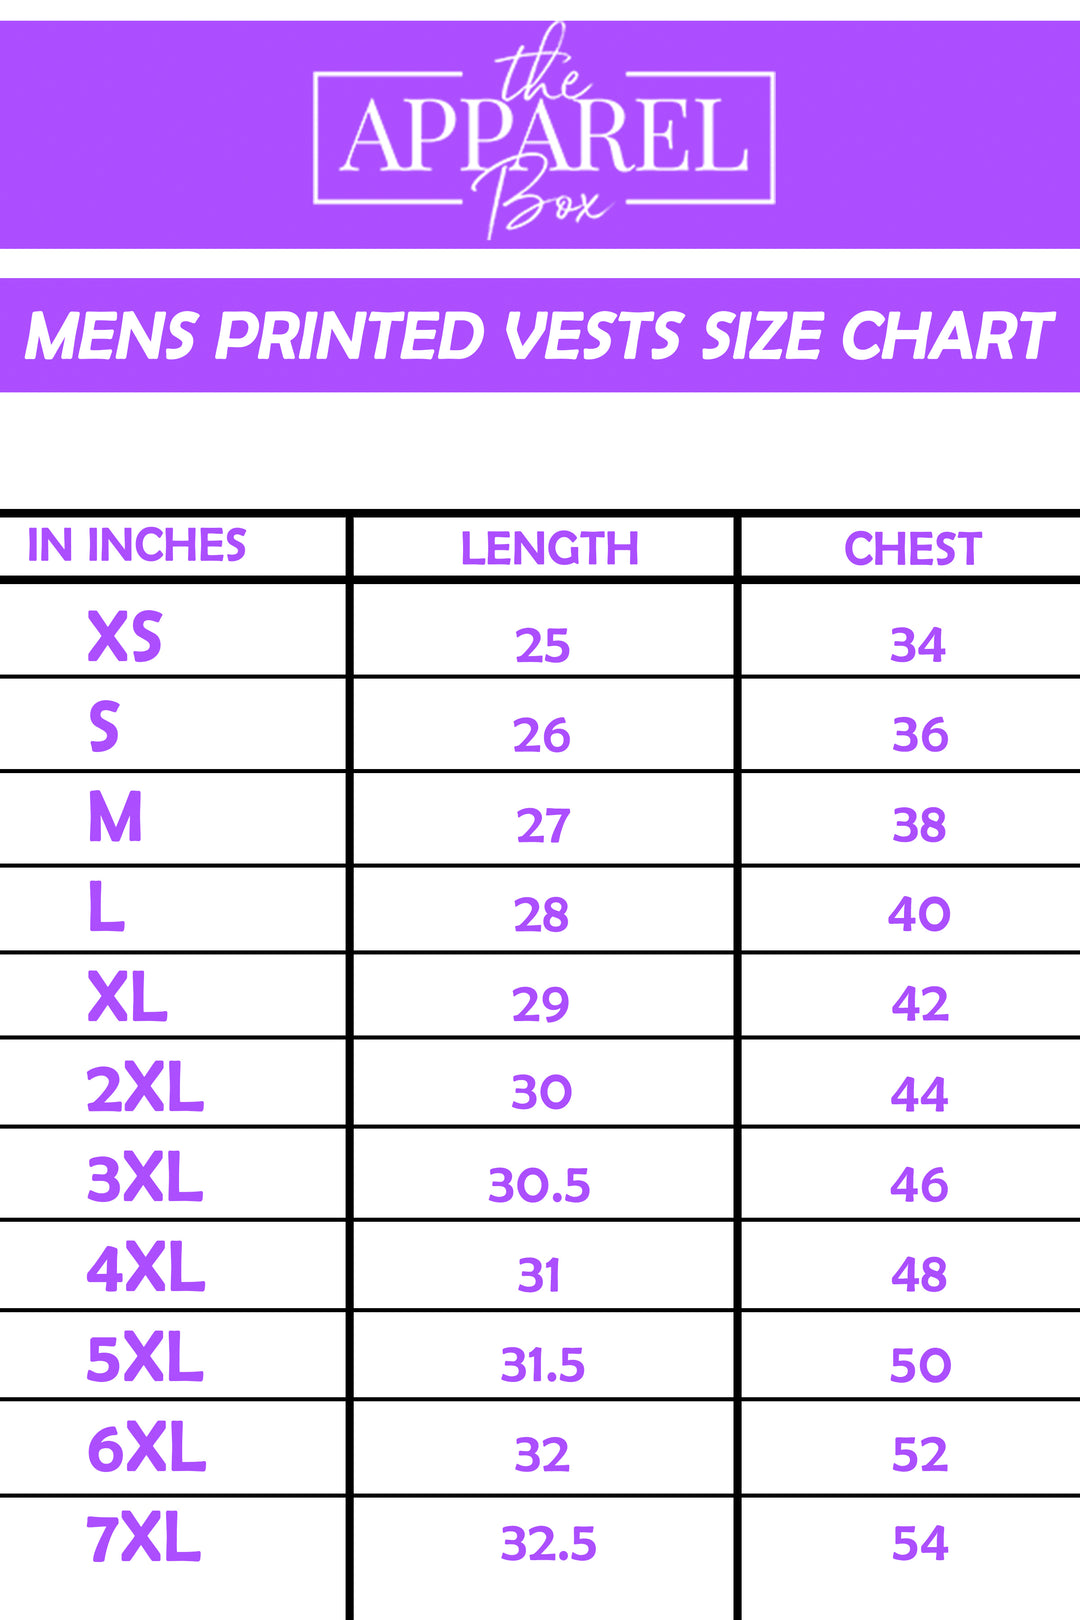 Printed Vest#24